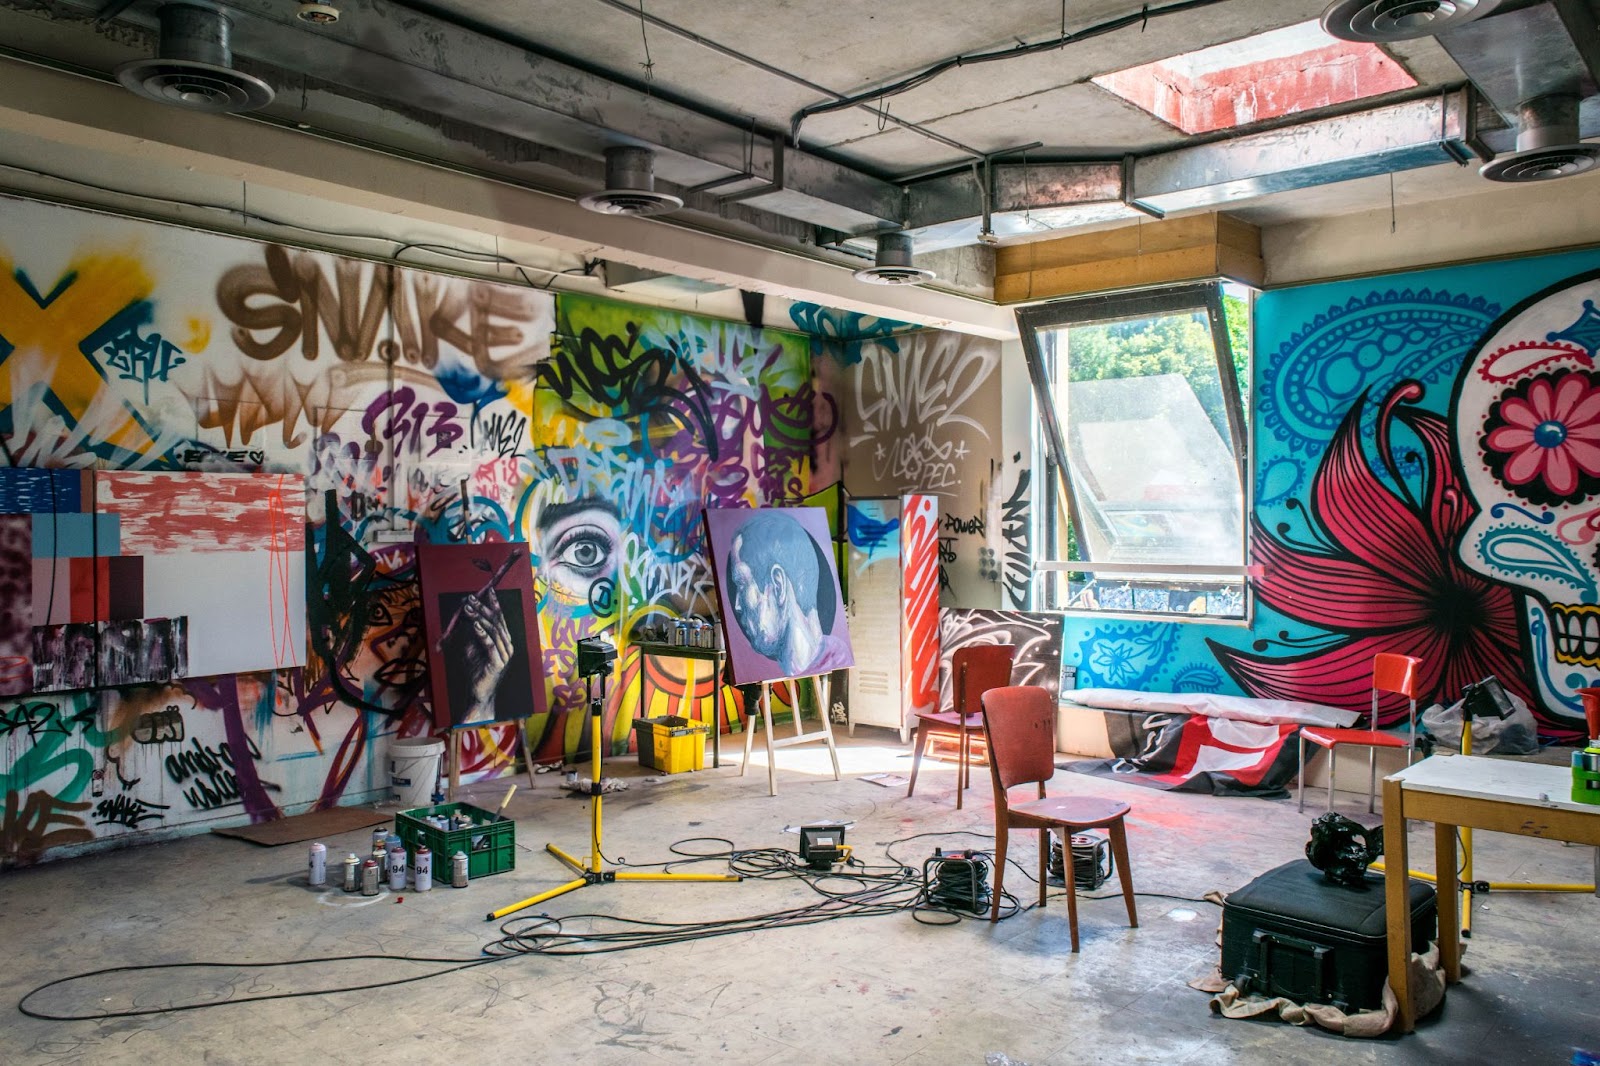 An artist studio in the garage